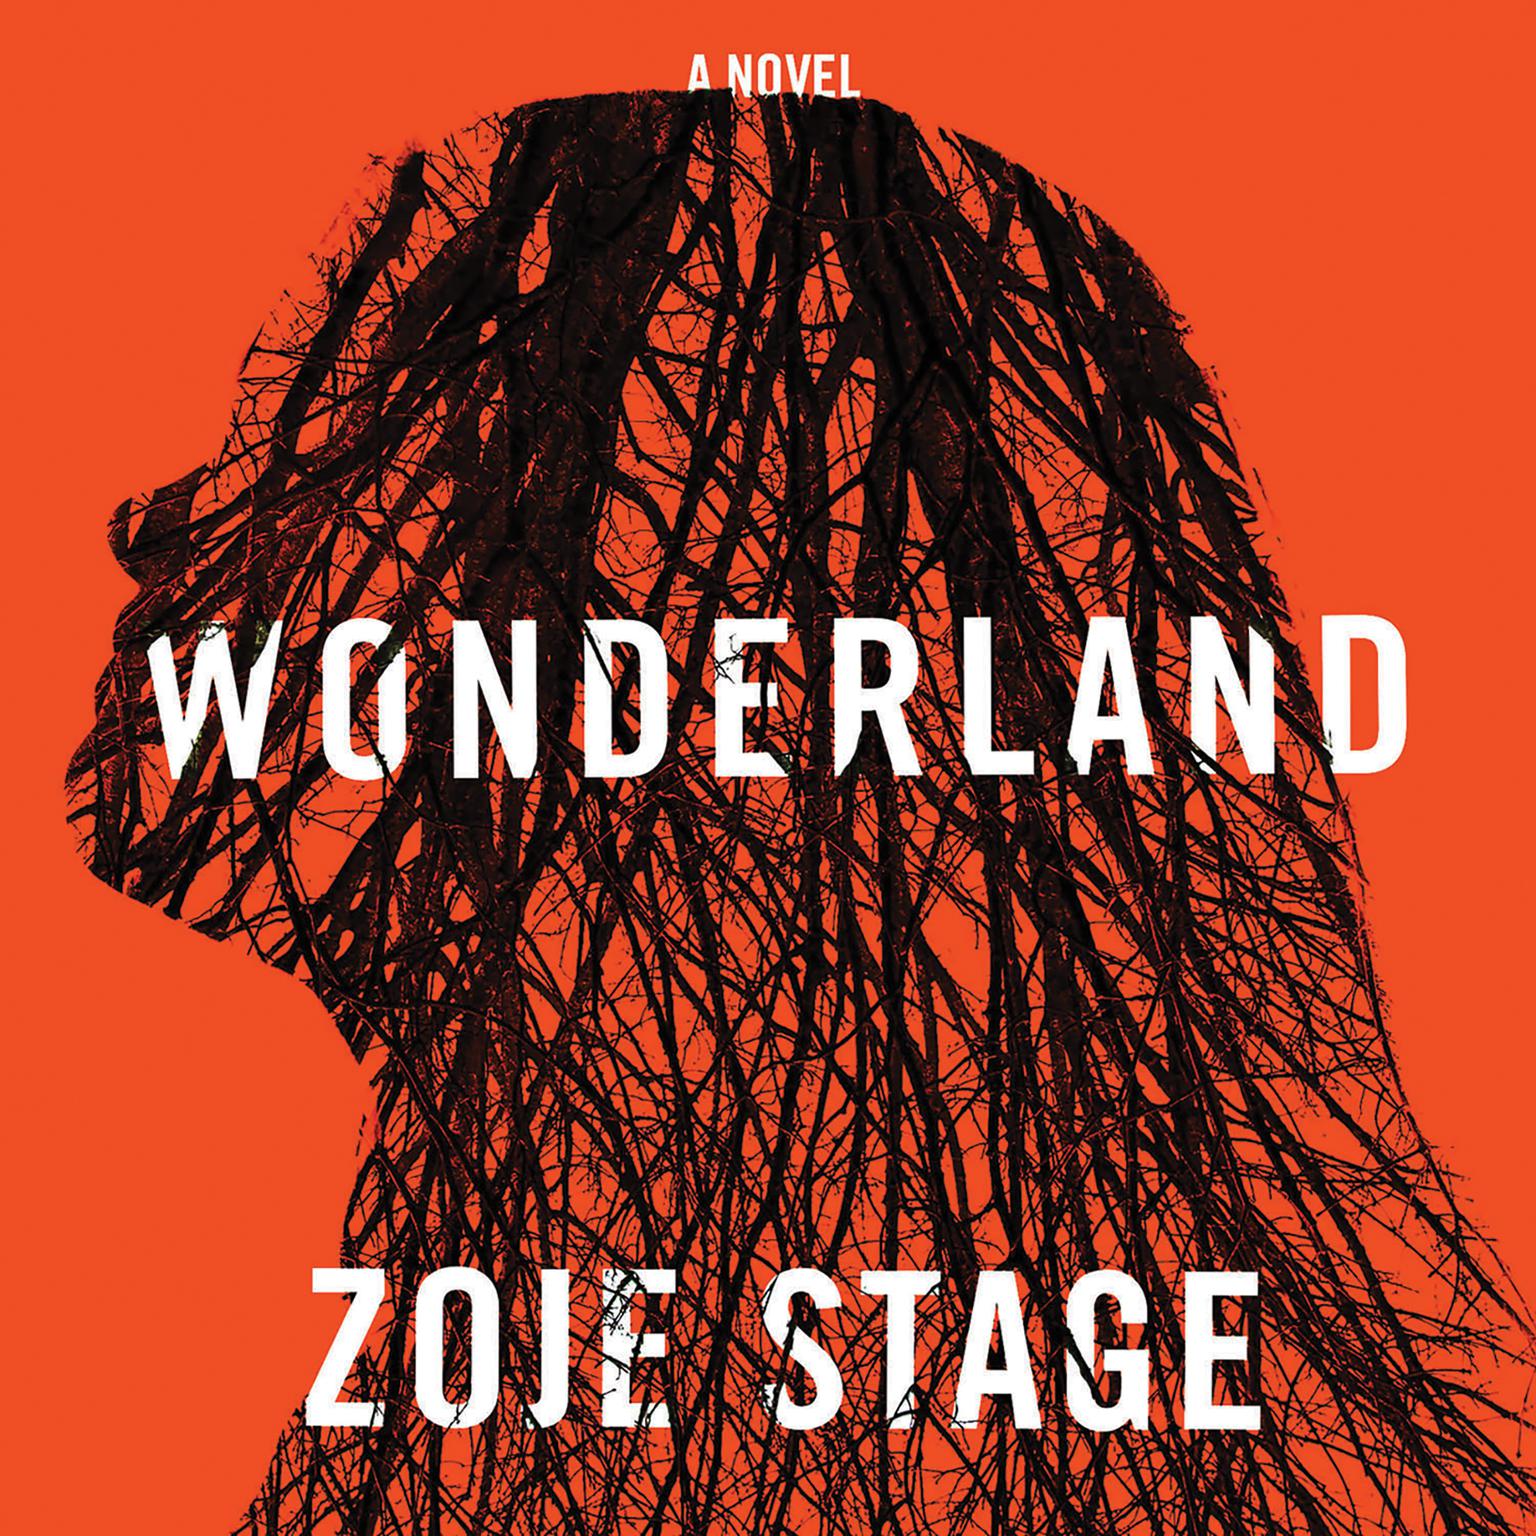 Wonderland: A Novel Audiobook, by Zoje Stage